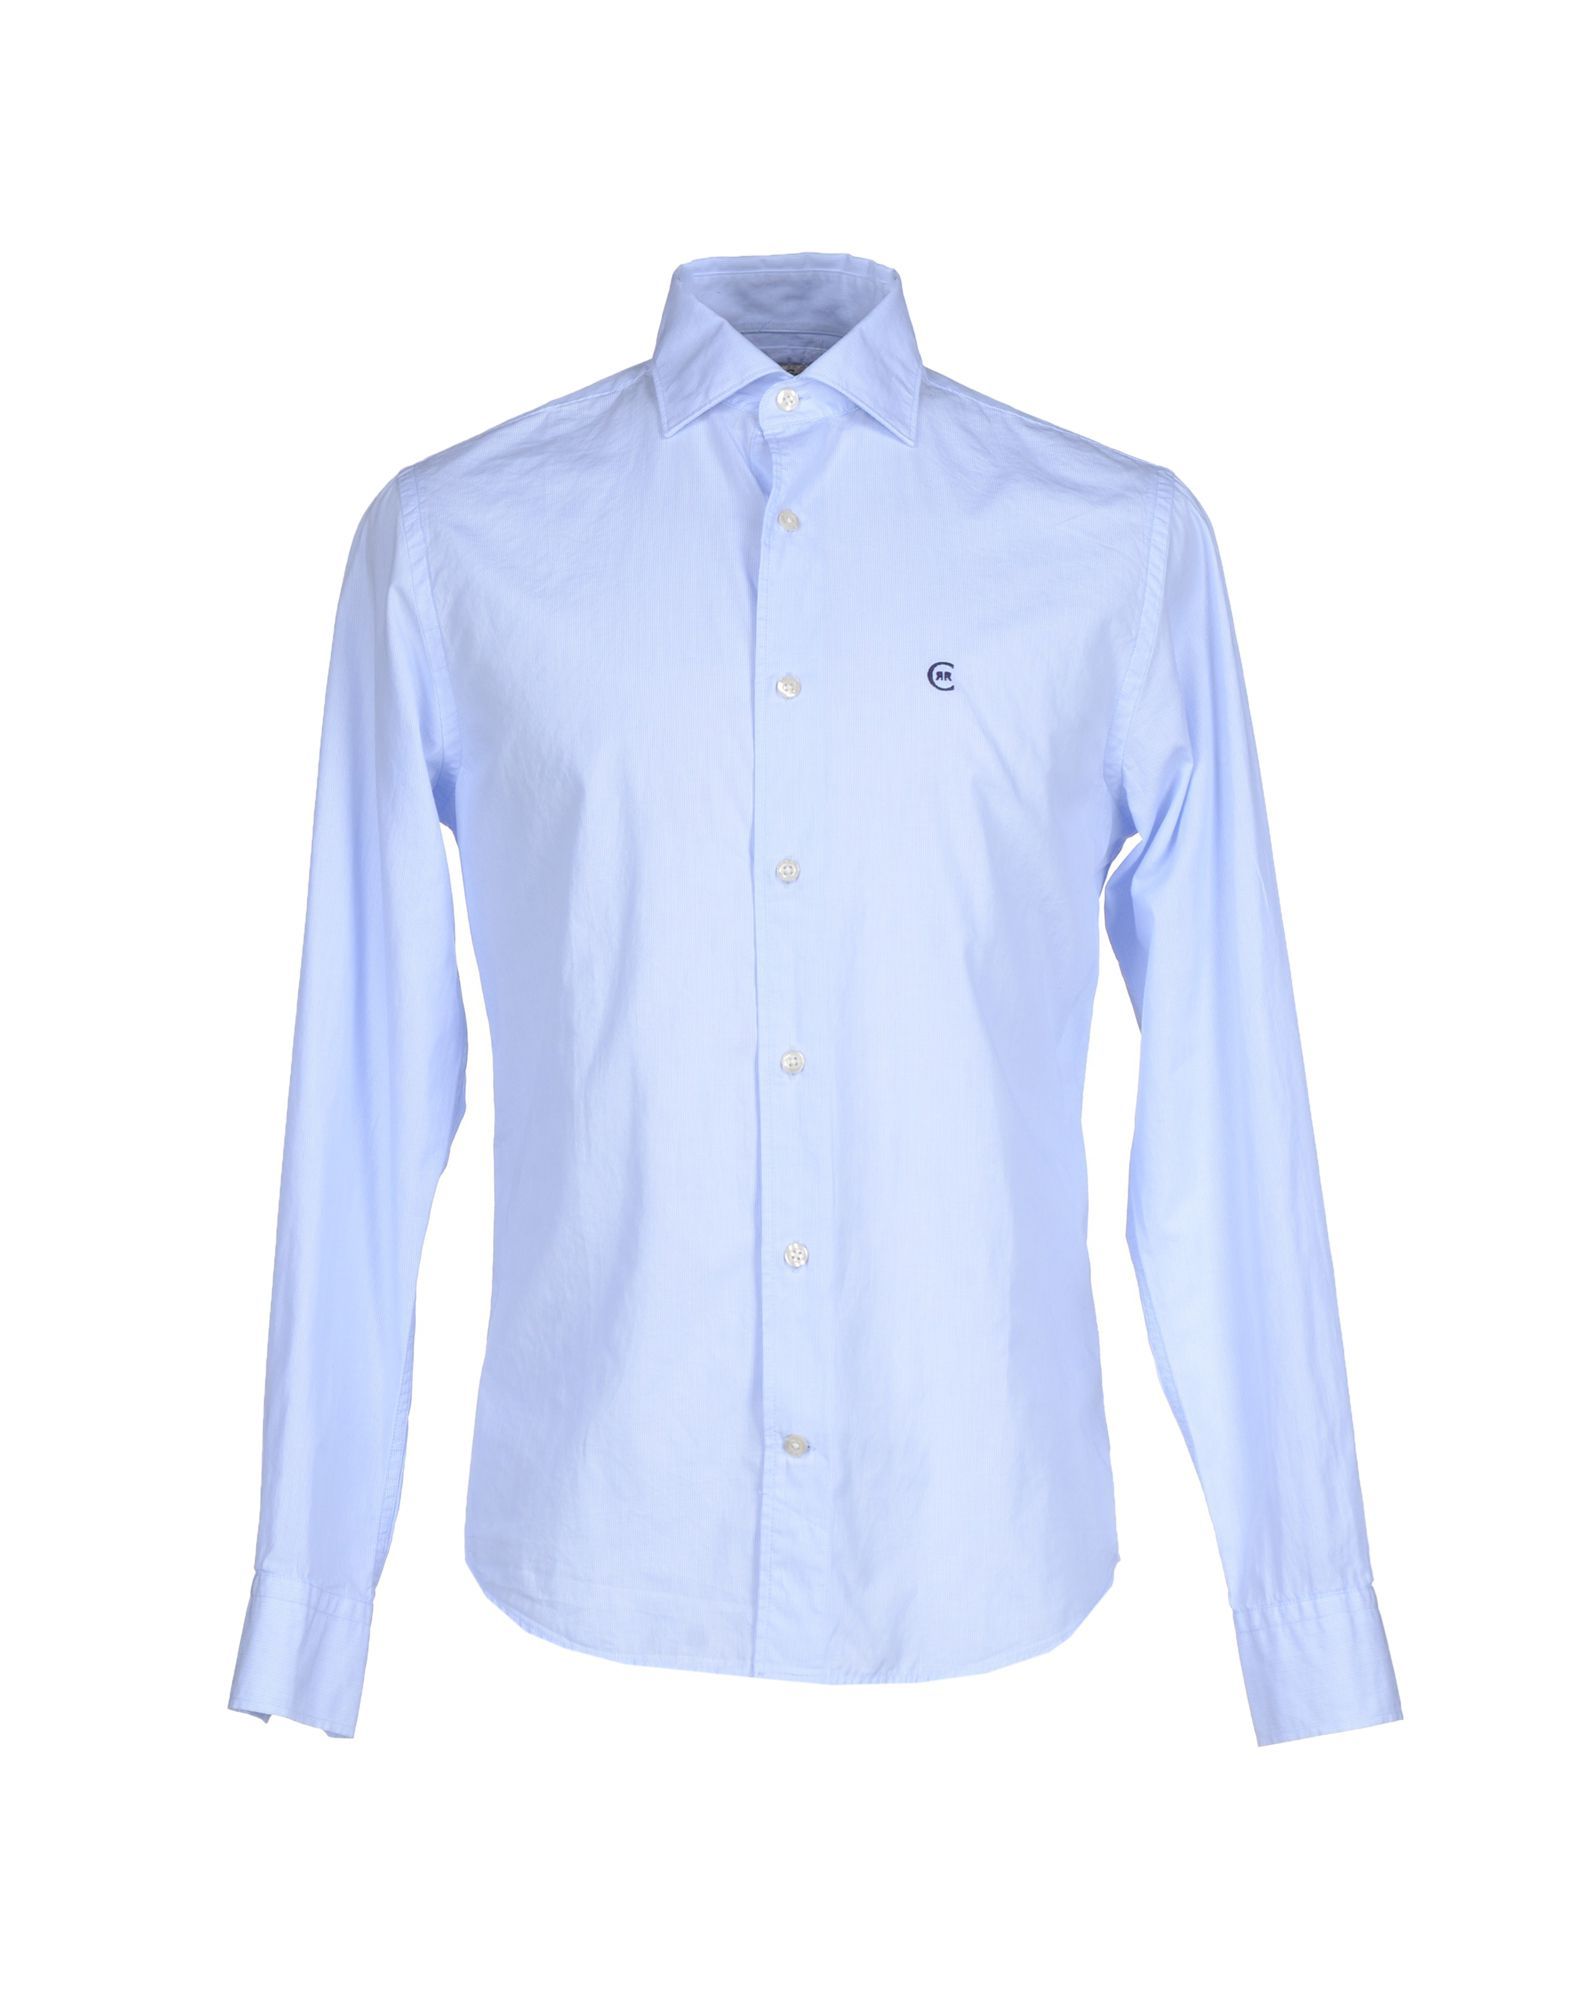 Cerruti 1881 Sky Blue Cotton Shirt